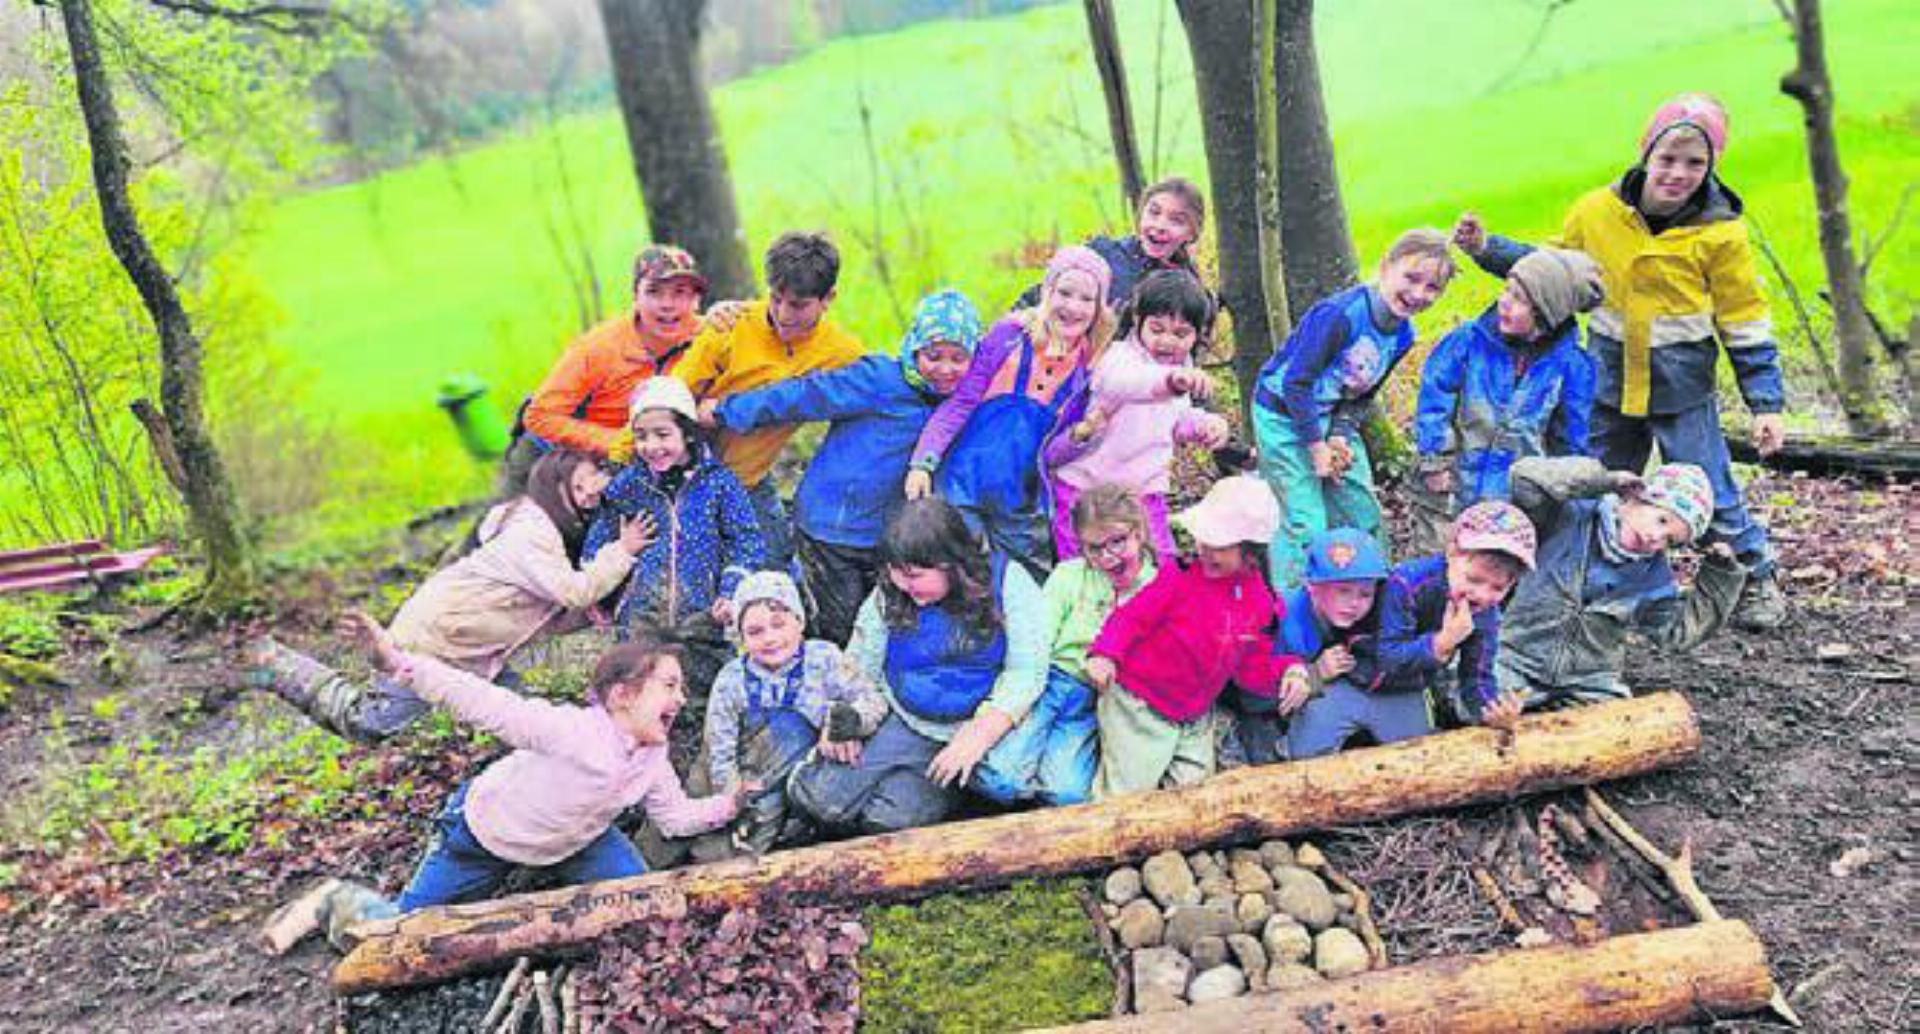 Die Kinder hatten trotz durchzogenem Wetter viel Spass im Wald. Bild: zg